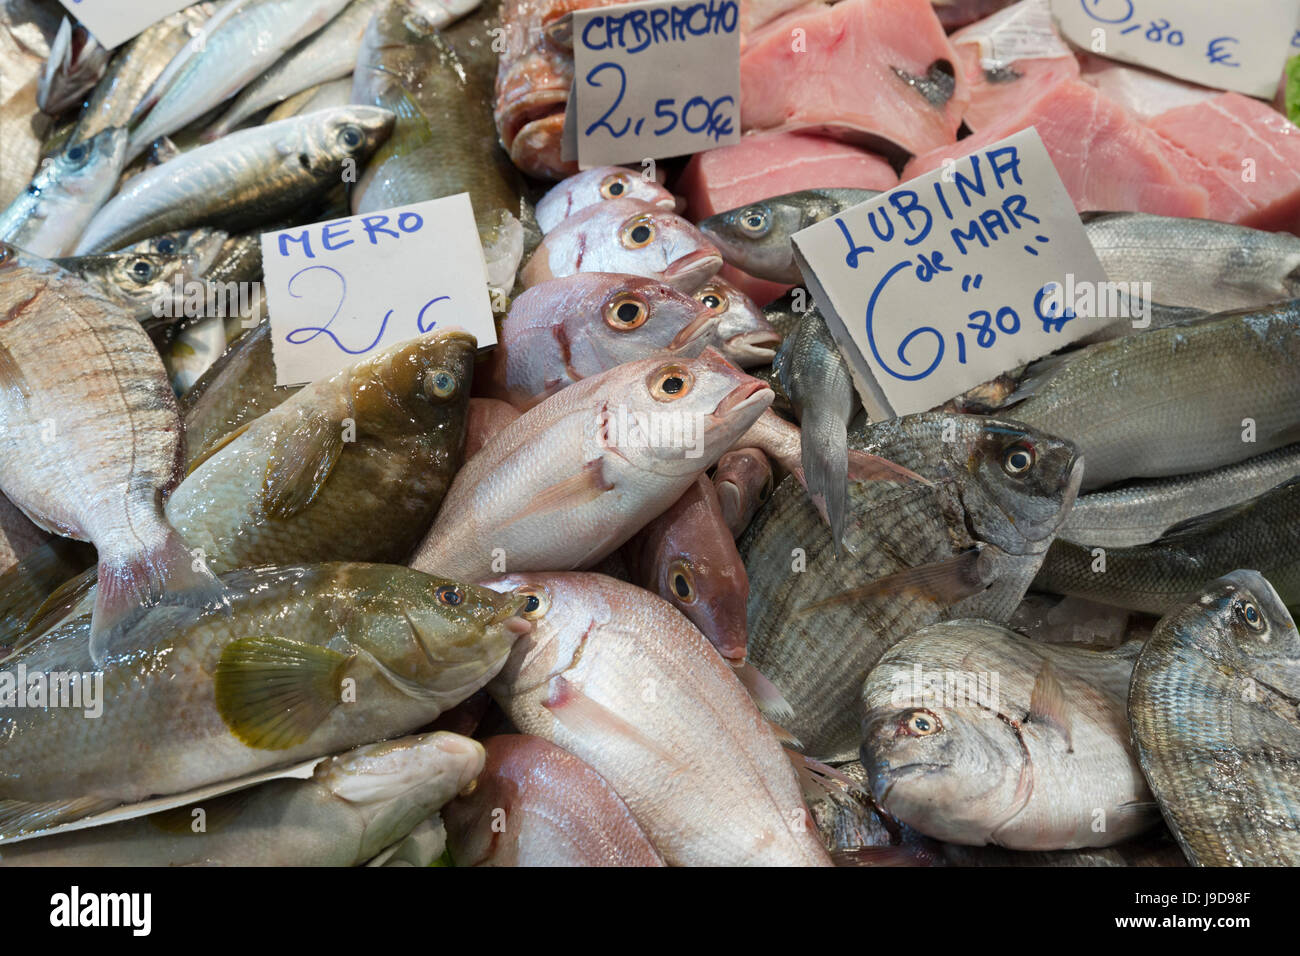 Frischer Fisch im Mercado Central de Abastos Lebensmittel Markt, Jerez De La Frontera, Cadiz Provinz, Andalusien, Spanien, Europa Stockfoto